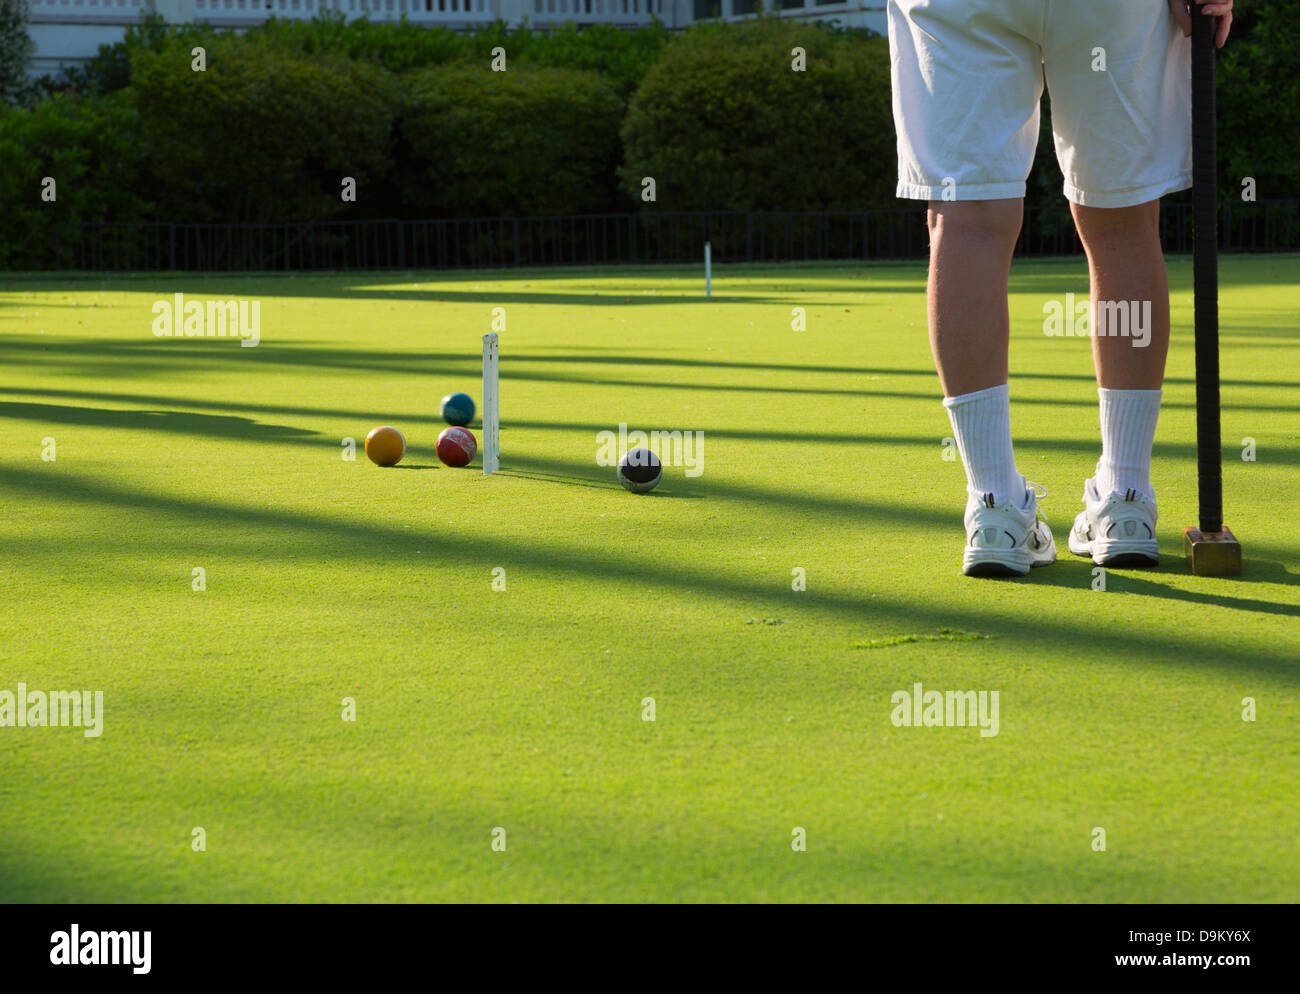 Eine Partie Golf Croquet. Ein Spieler beobachtet, wie ein anderer Spieler Ball nähert sich das Wicket. Stockfoto